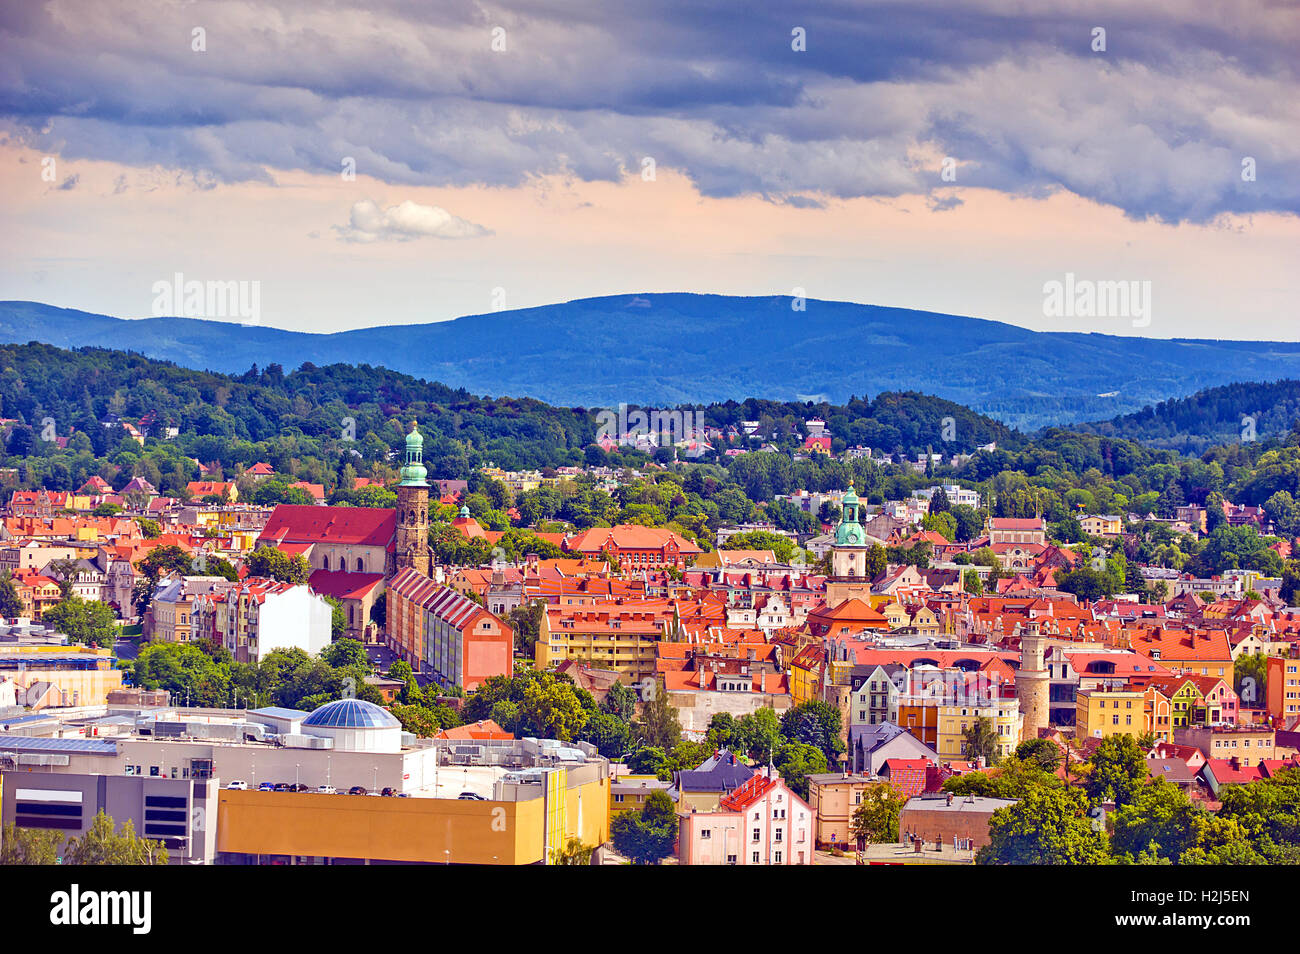 City view of Jelenia Gora, Lower Silesia, Poland in foothills of Karkonosze Mountains on sunny day. Stock Photo